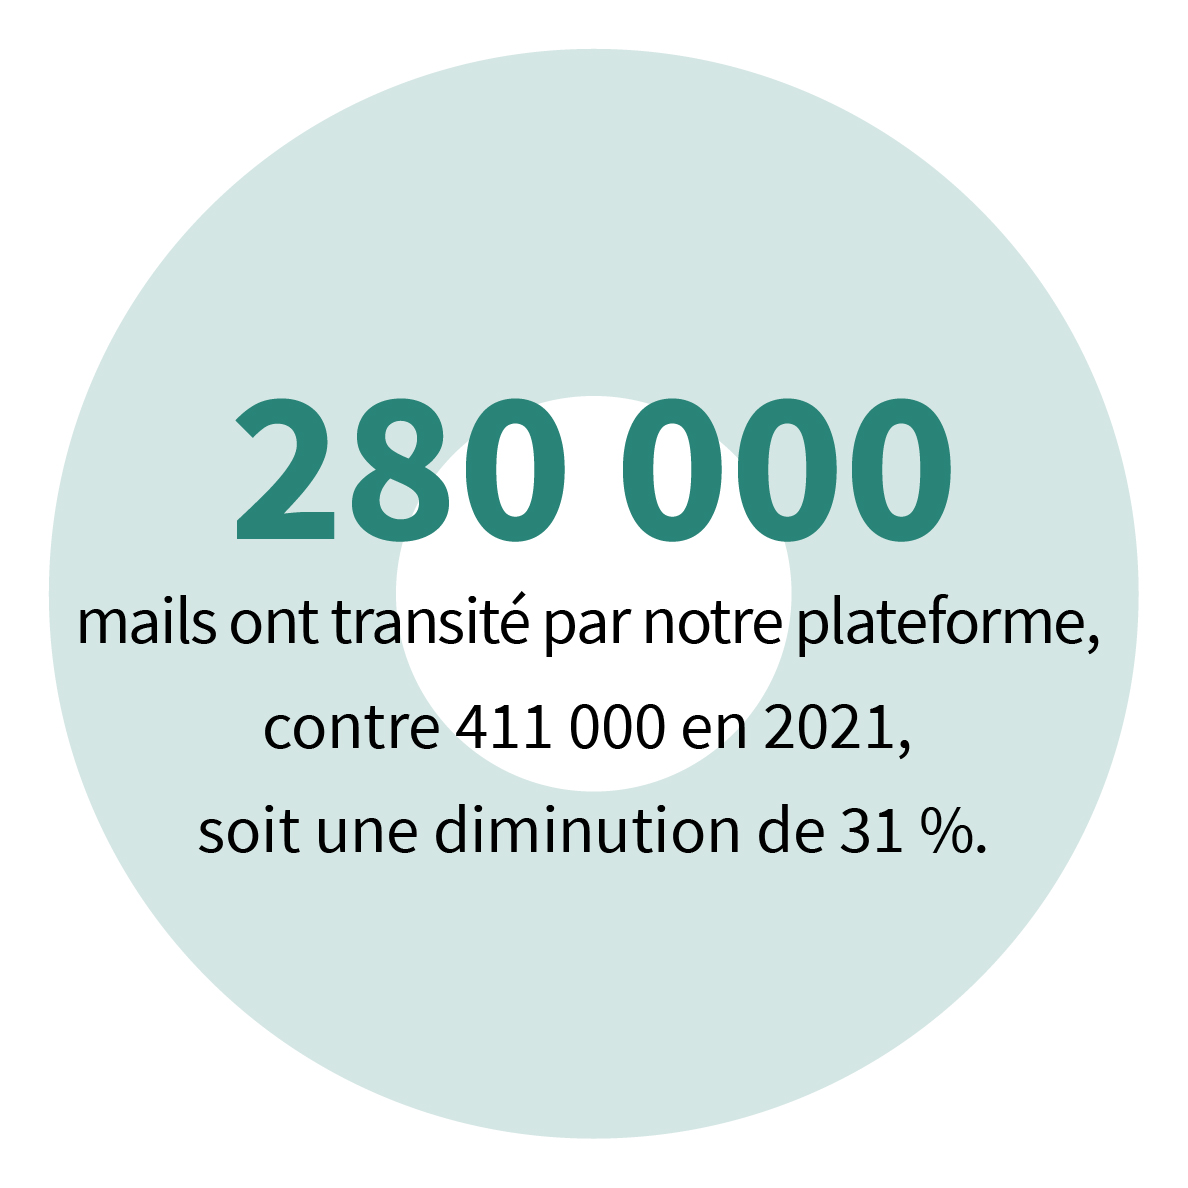 280 000 mails ont transité par notre plateforme contre 411 000 en 2021, soit une diminution de 31 %.